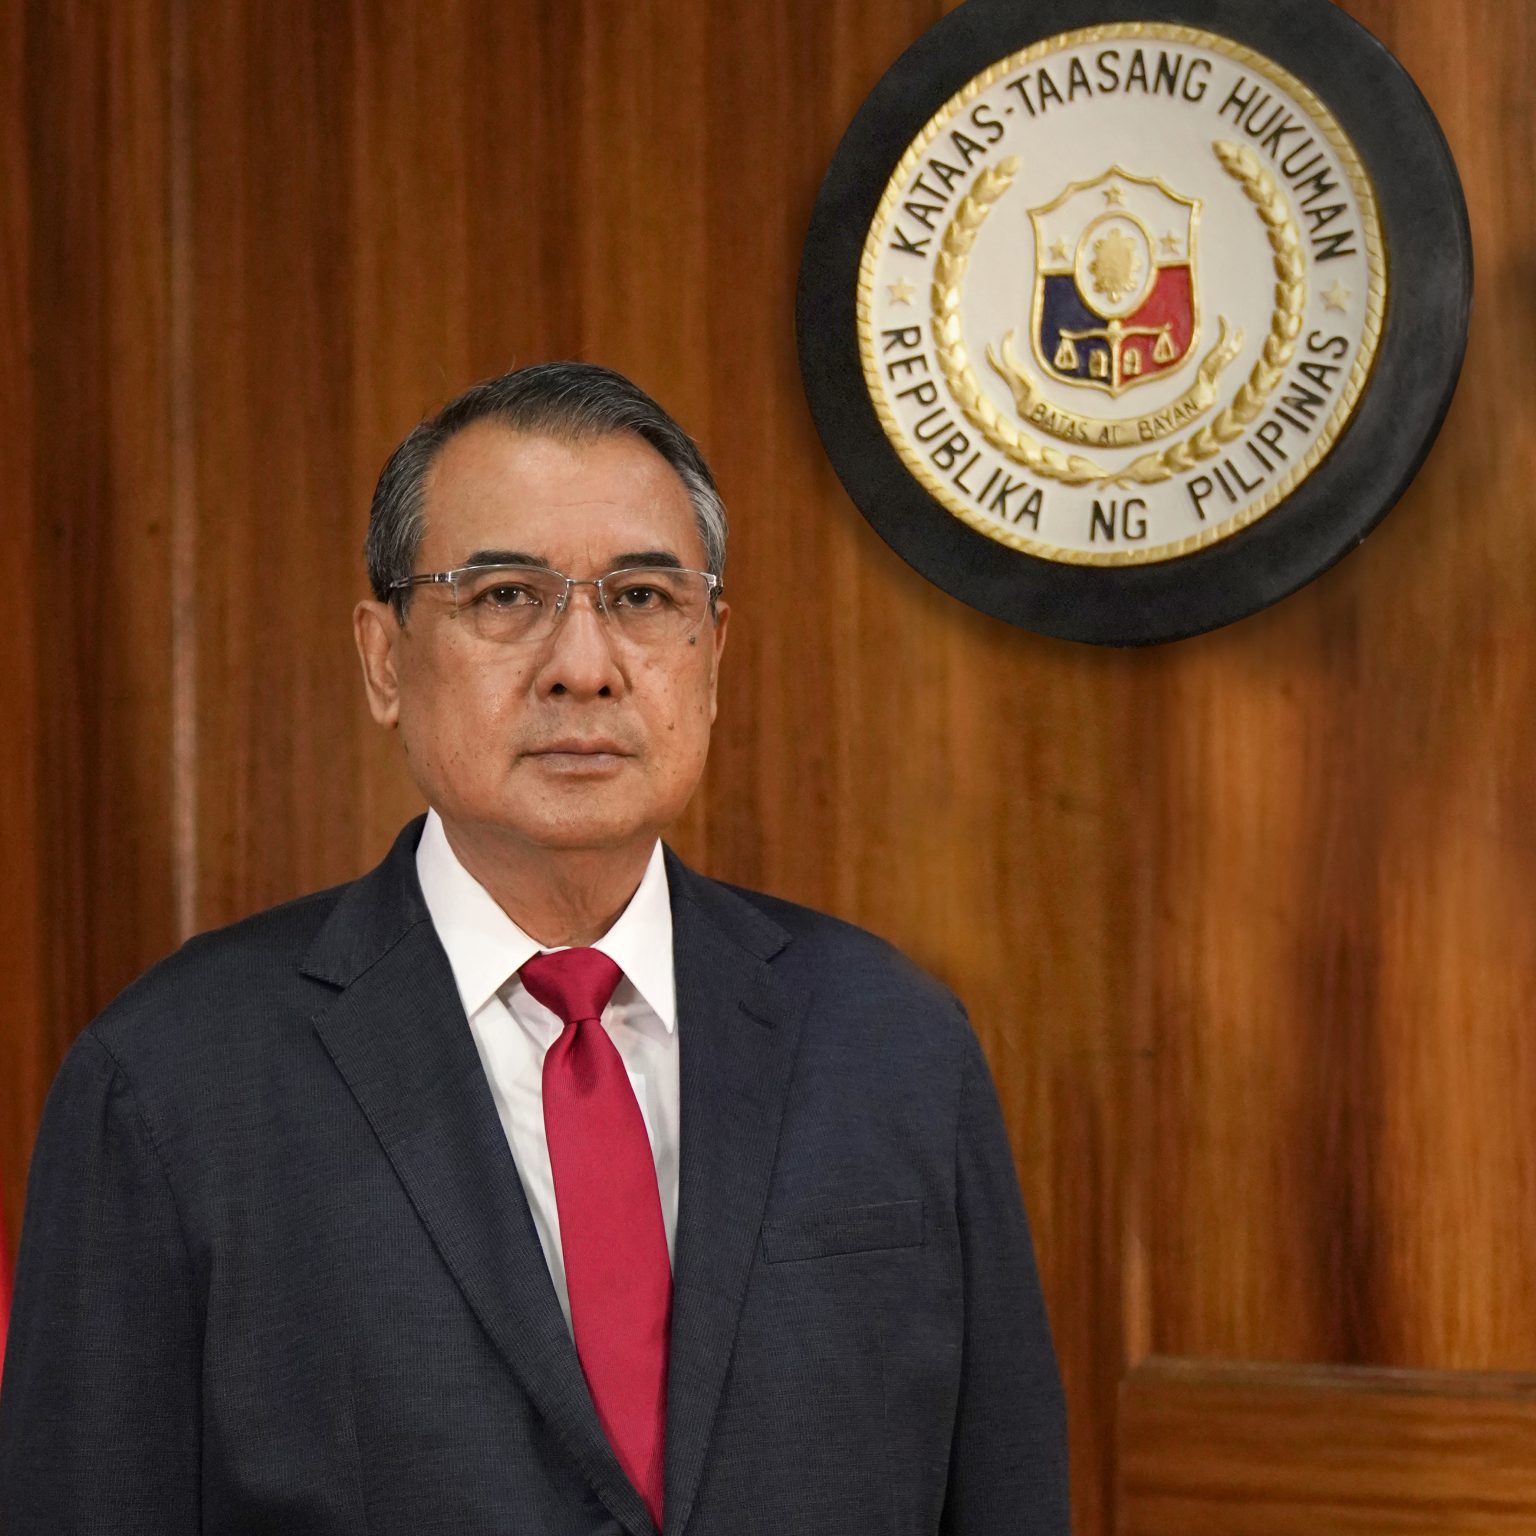 Chief Justice Alexander G. Gesmundo HCCH Asia Pacific Week Manila 2022